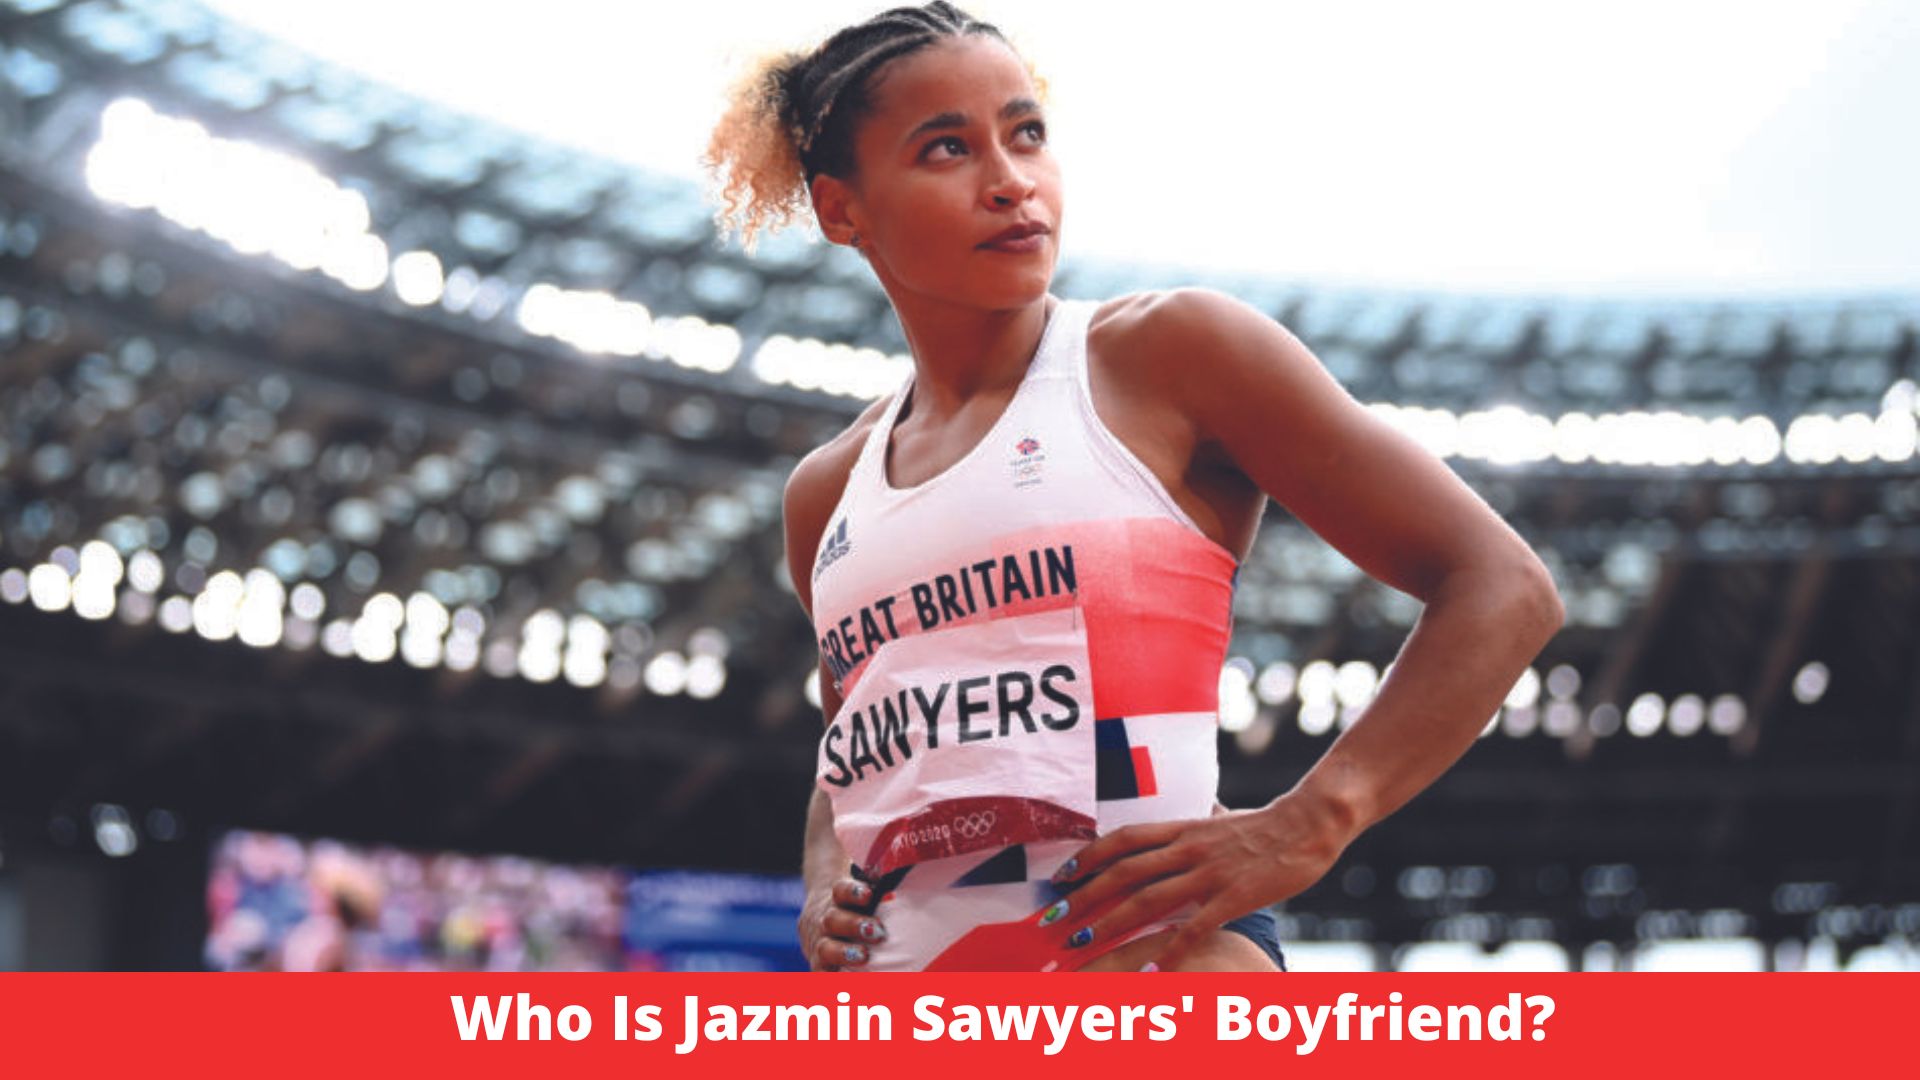 Who Is Jazmin Sawyers' Boyfriend?